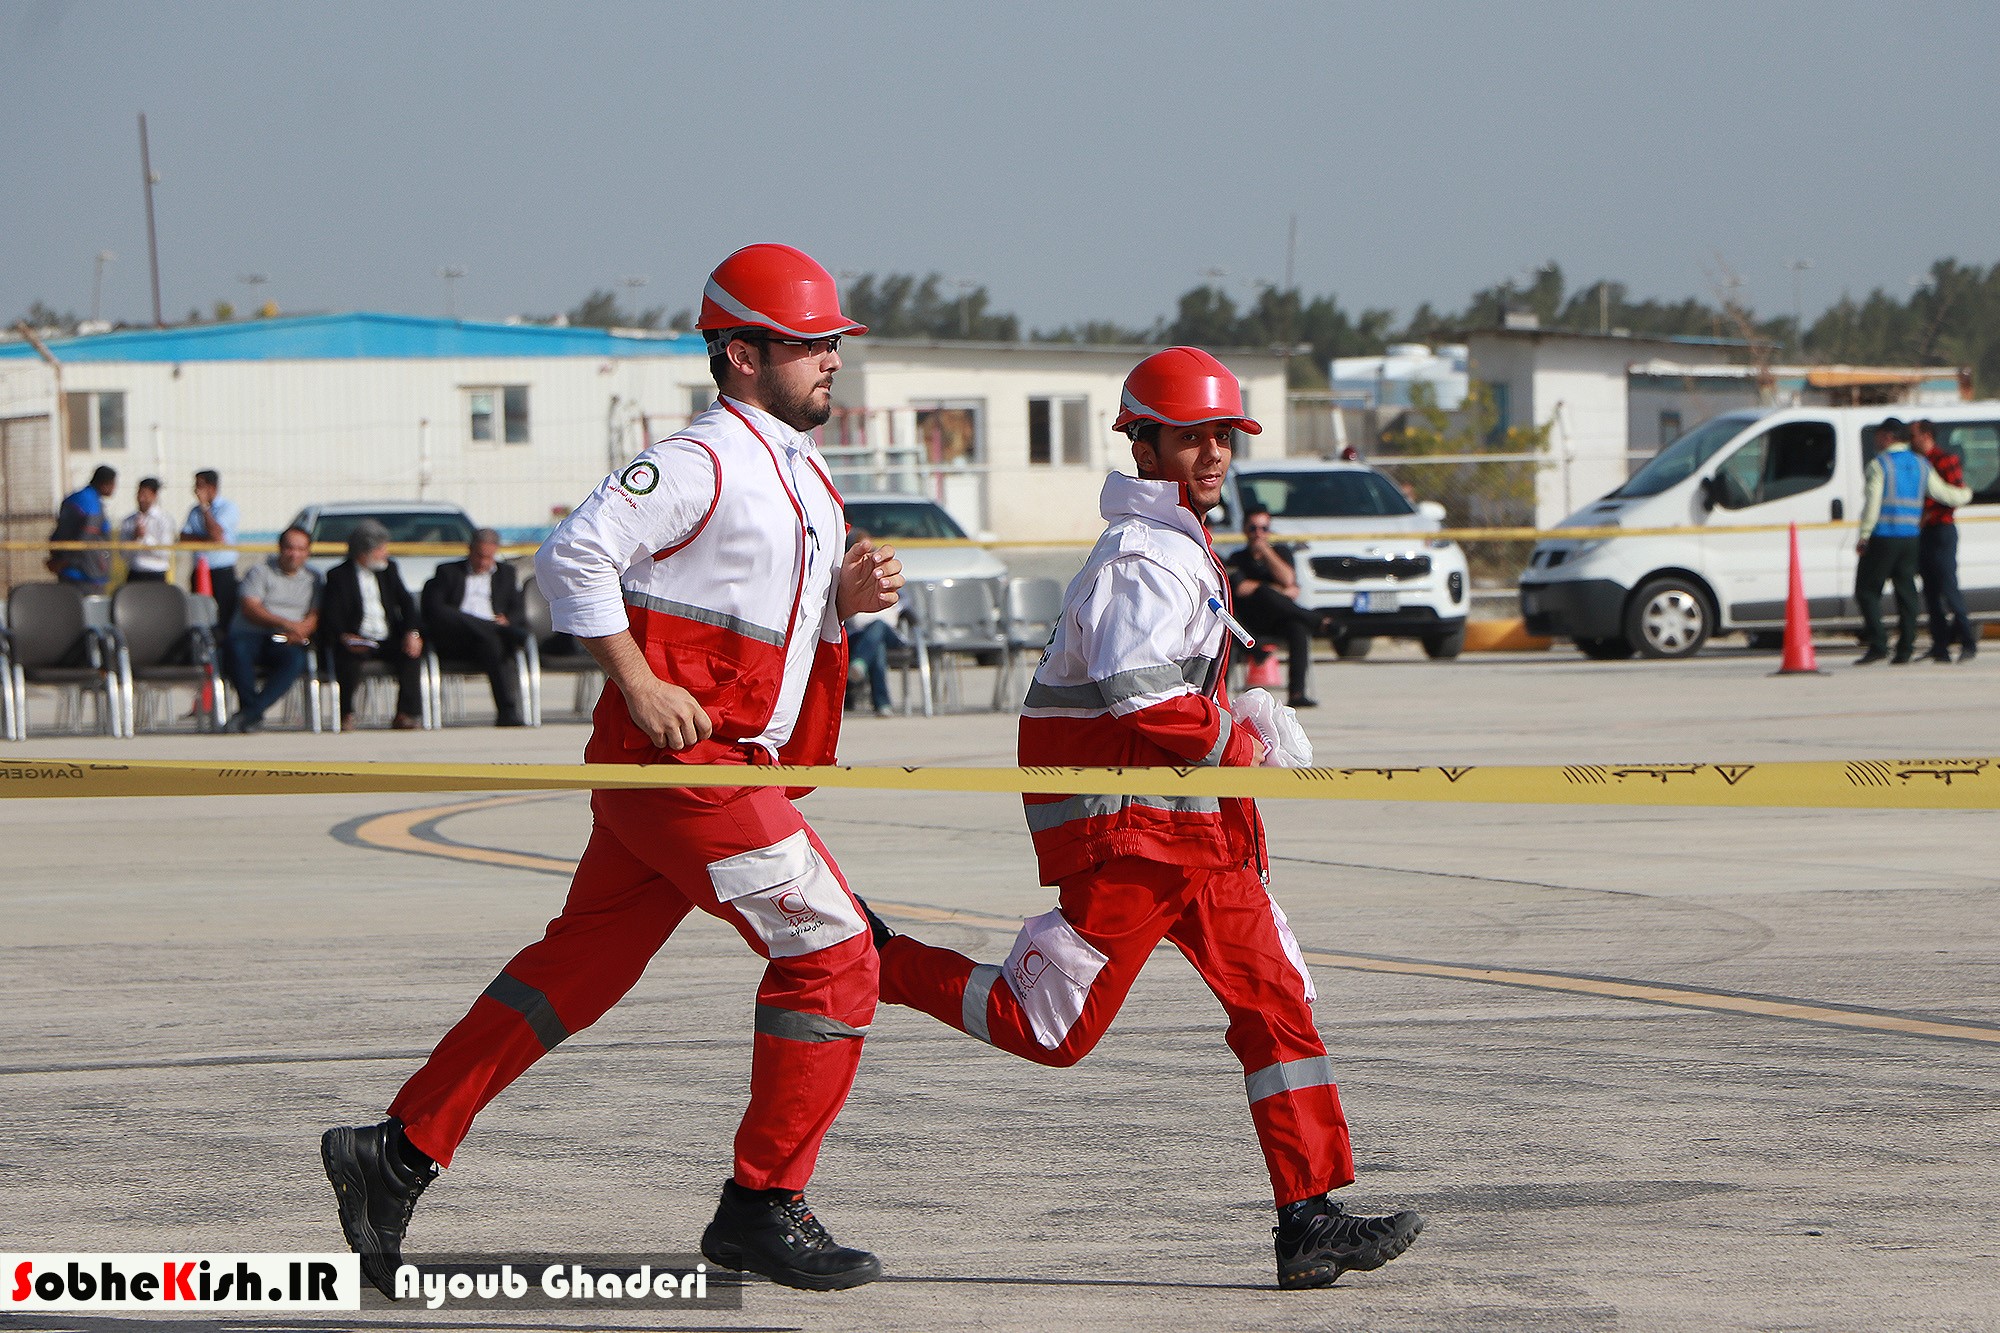 مانور امداد و نجات در فرودگاه بین المللی جزیره کیش